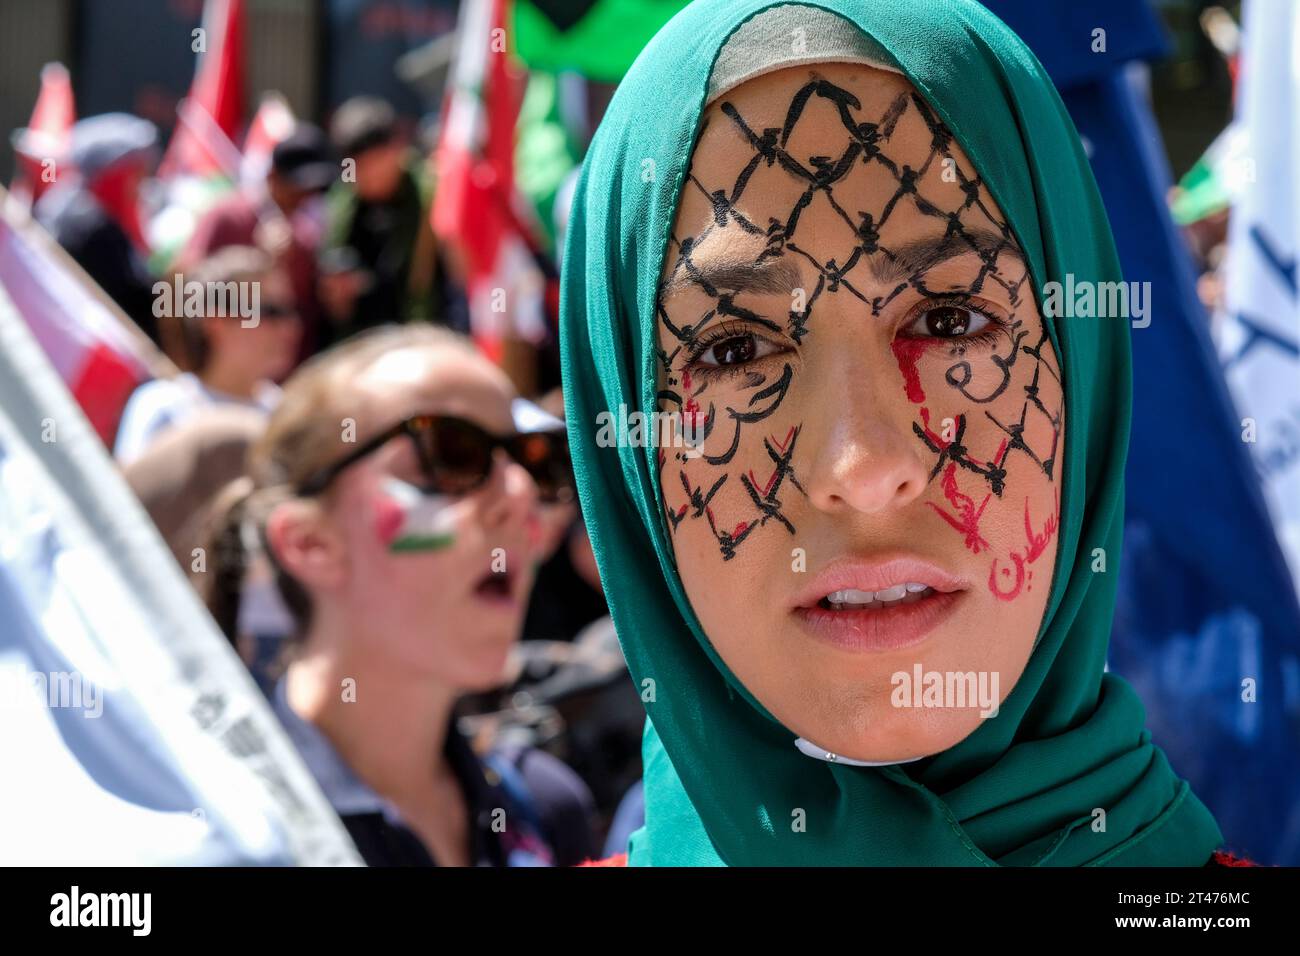 Un rassemblement pro-palestinien à Melbourne, Victoria, Australie Banque D'Images